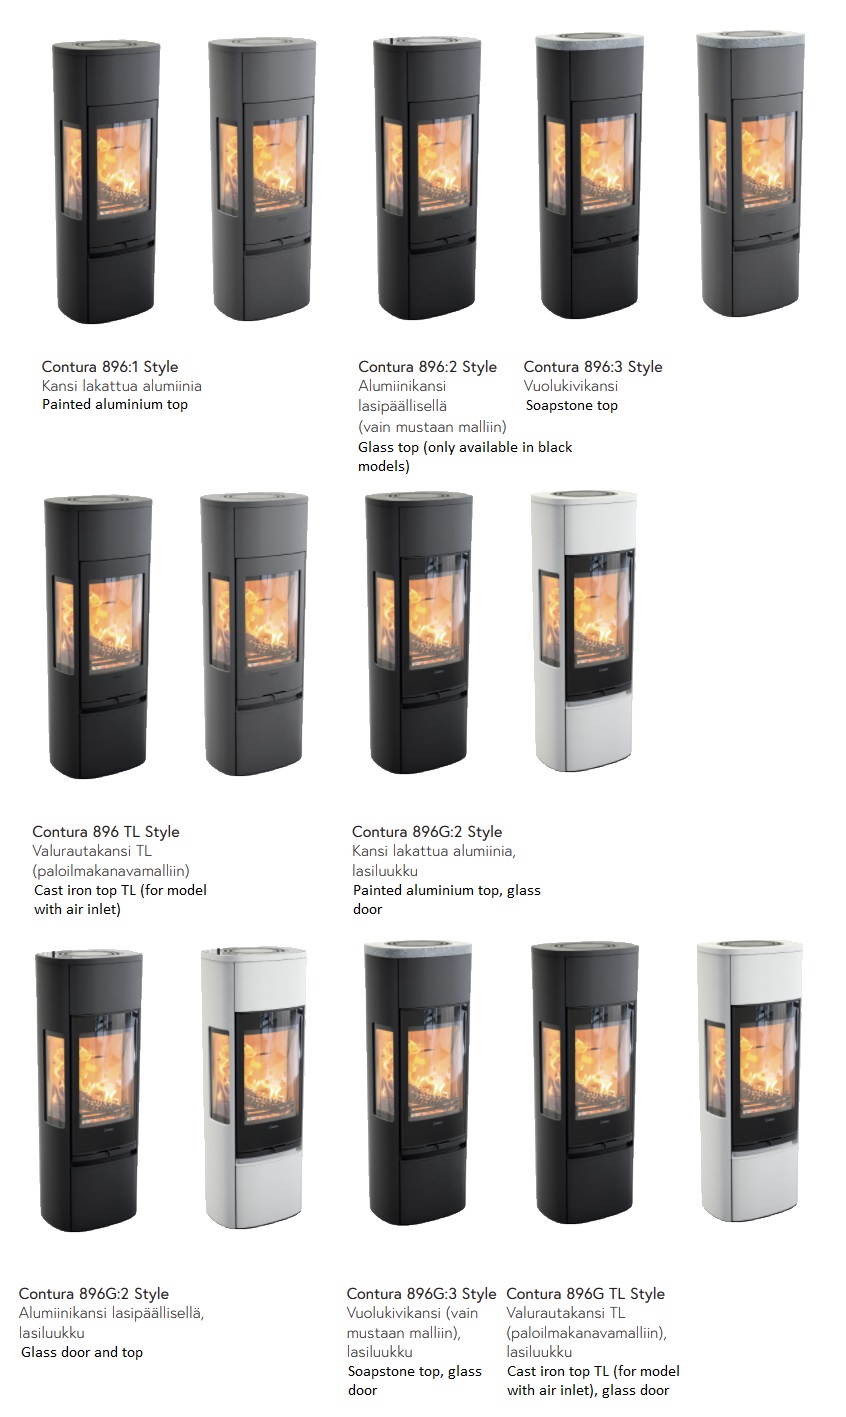 Contura 896 Style -takkamallit | Contura 896 Style stove models